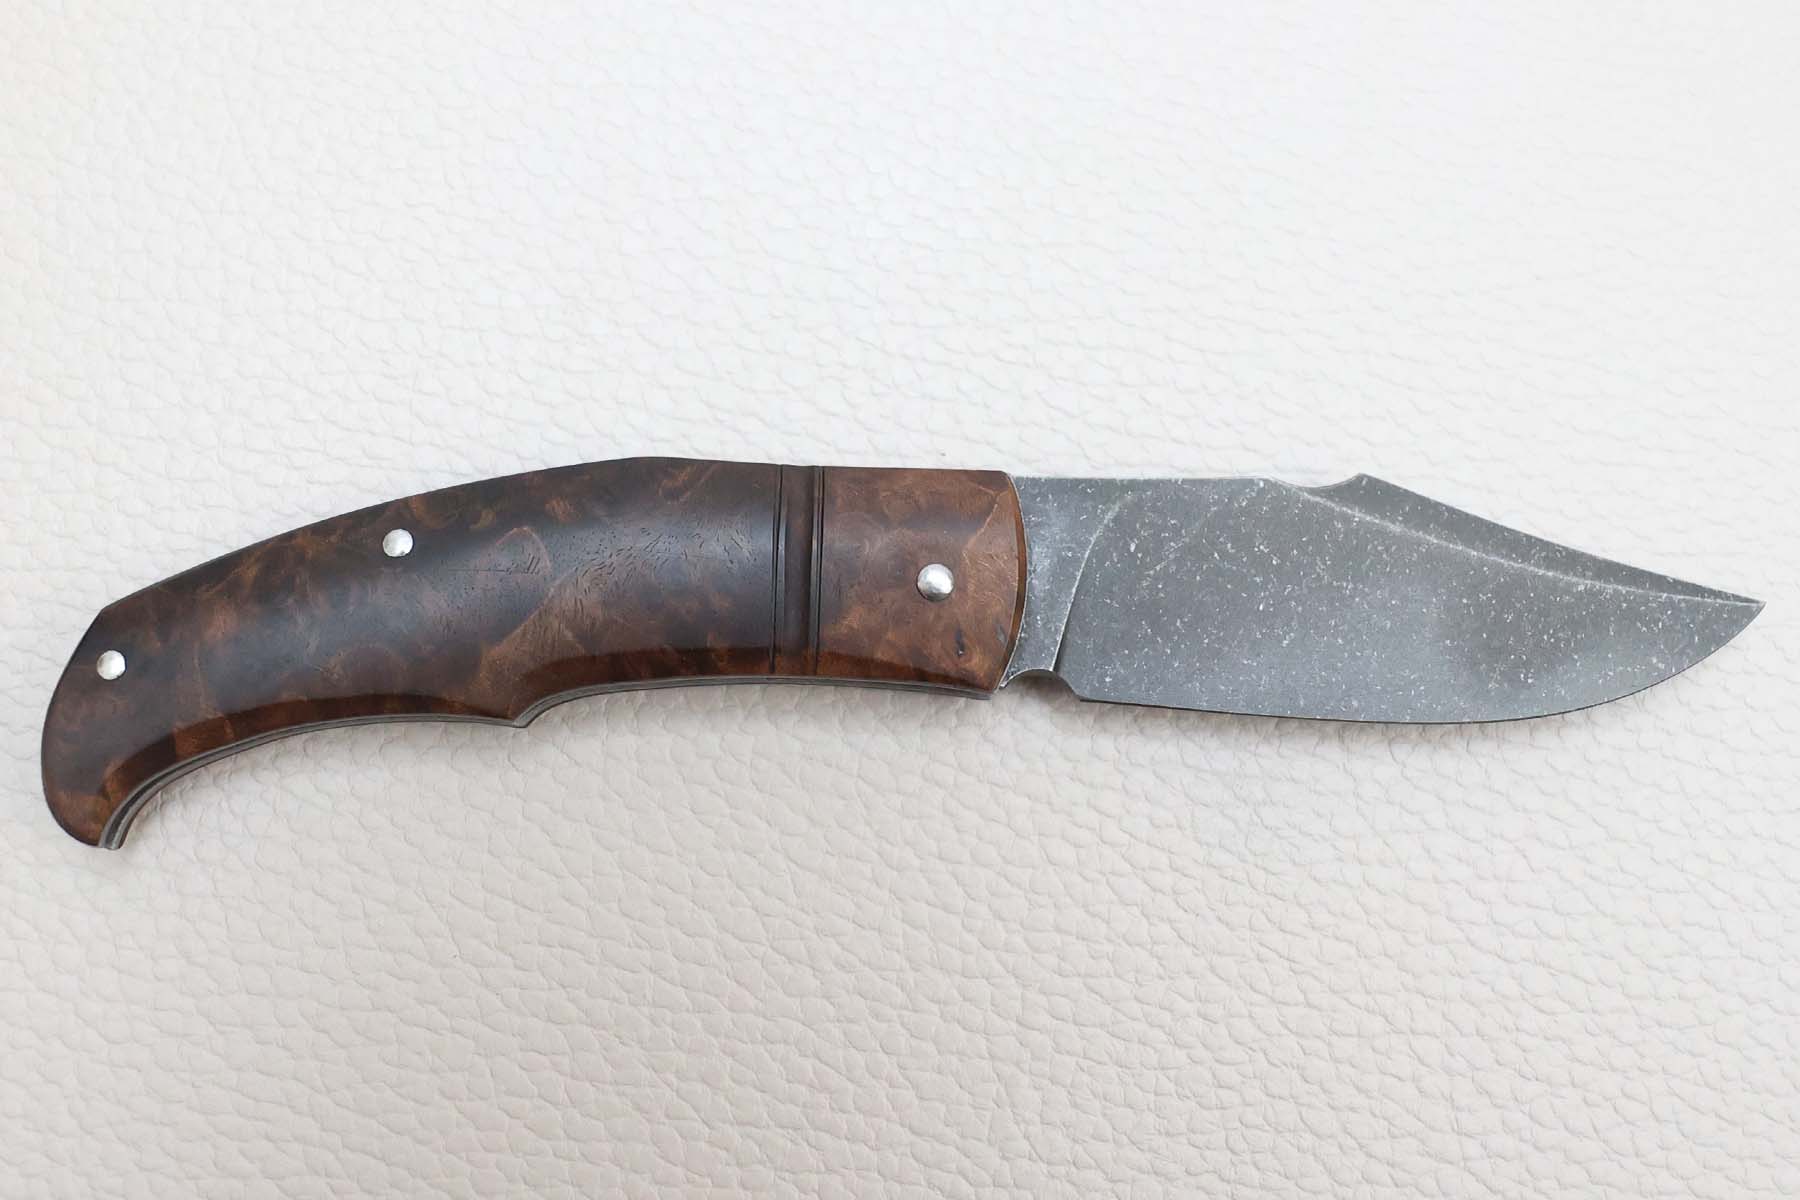 Couteau pliant artisanal "Forge Celtique" de Delbart fabrice - noyer stabilisé